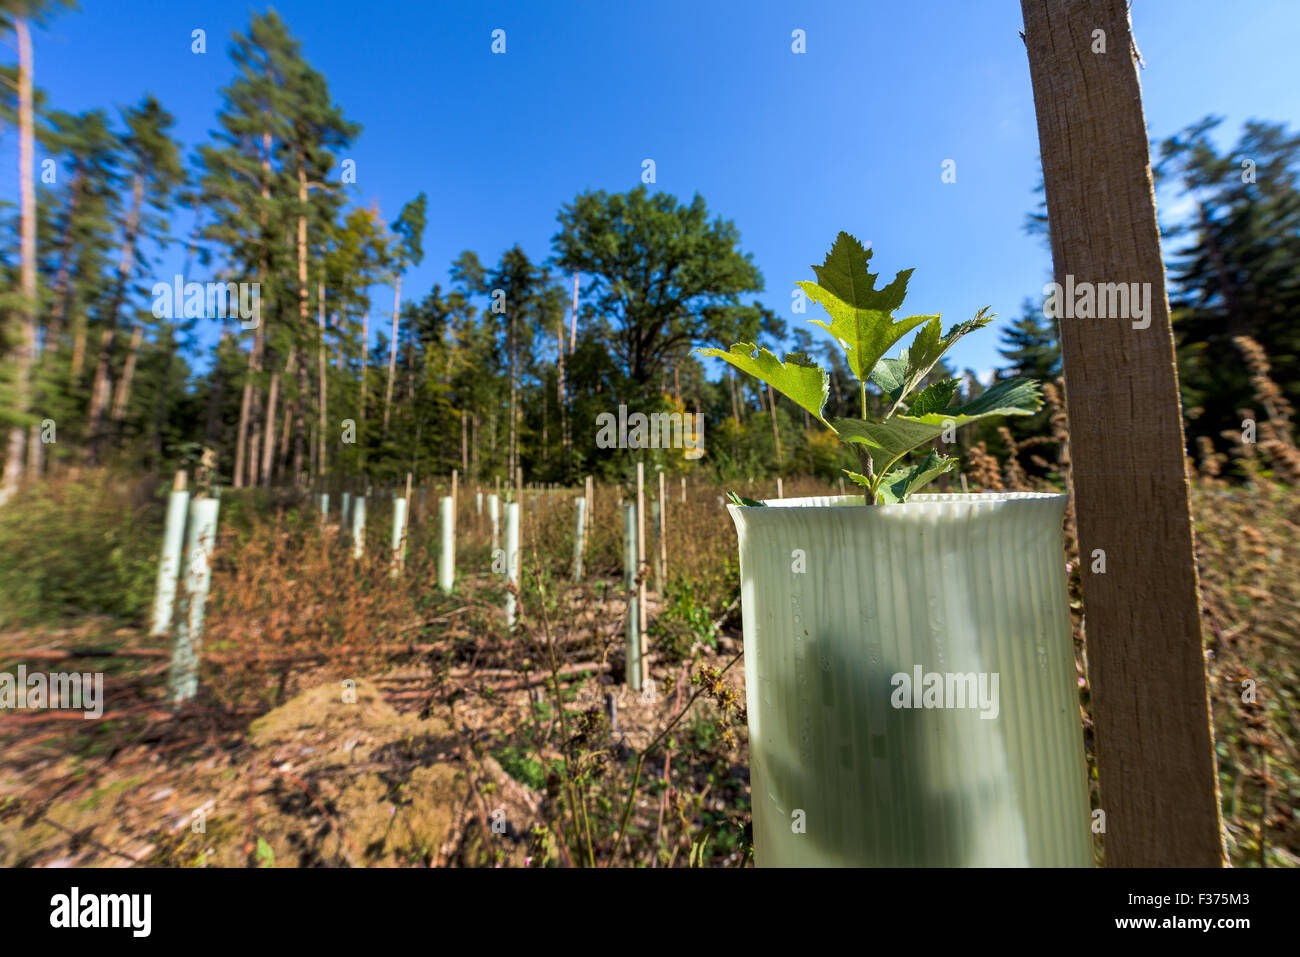 Petits plants de reboisement pousse tube protection des forêts d'arbres de gibier sauvage morsure, renouveler la protection des semis de conifères, des bleus Banque D'Images